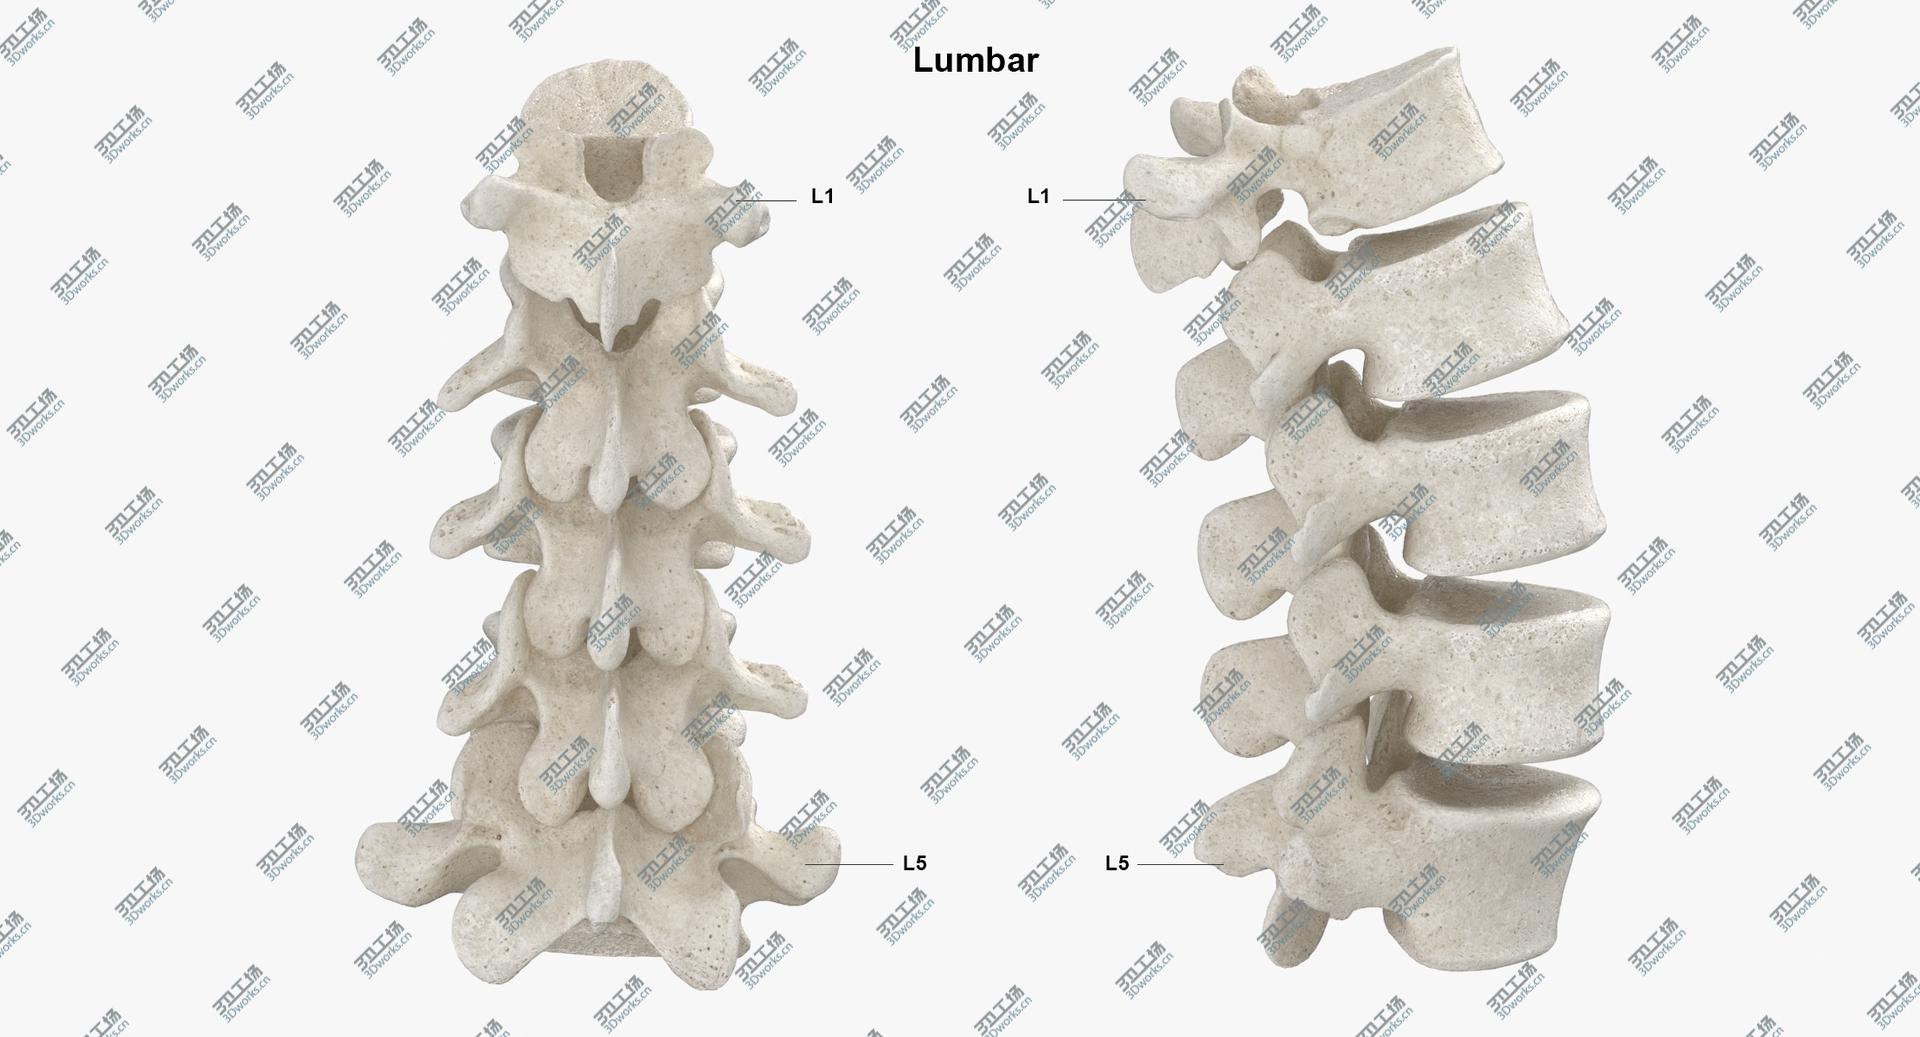 images/goods_img/2021040162/3D model Real Human Lumbar Vertebrae L1 to L5 Bones 01 White/4.jpg